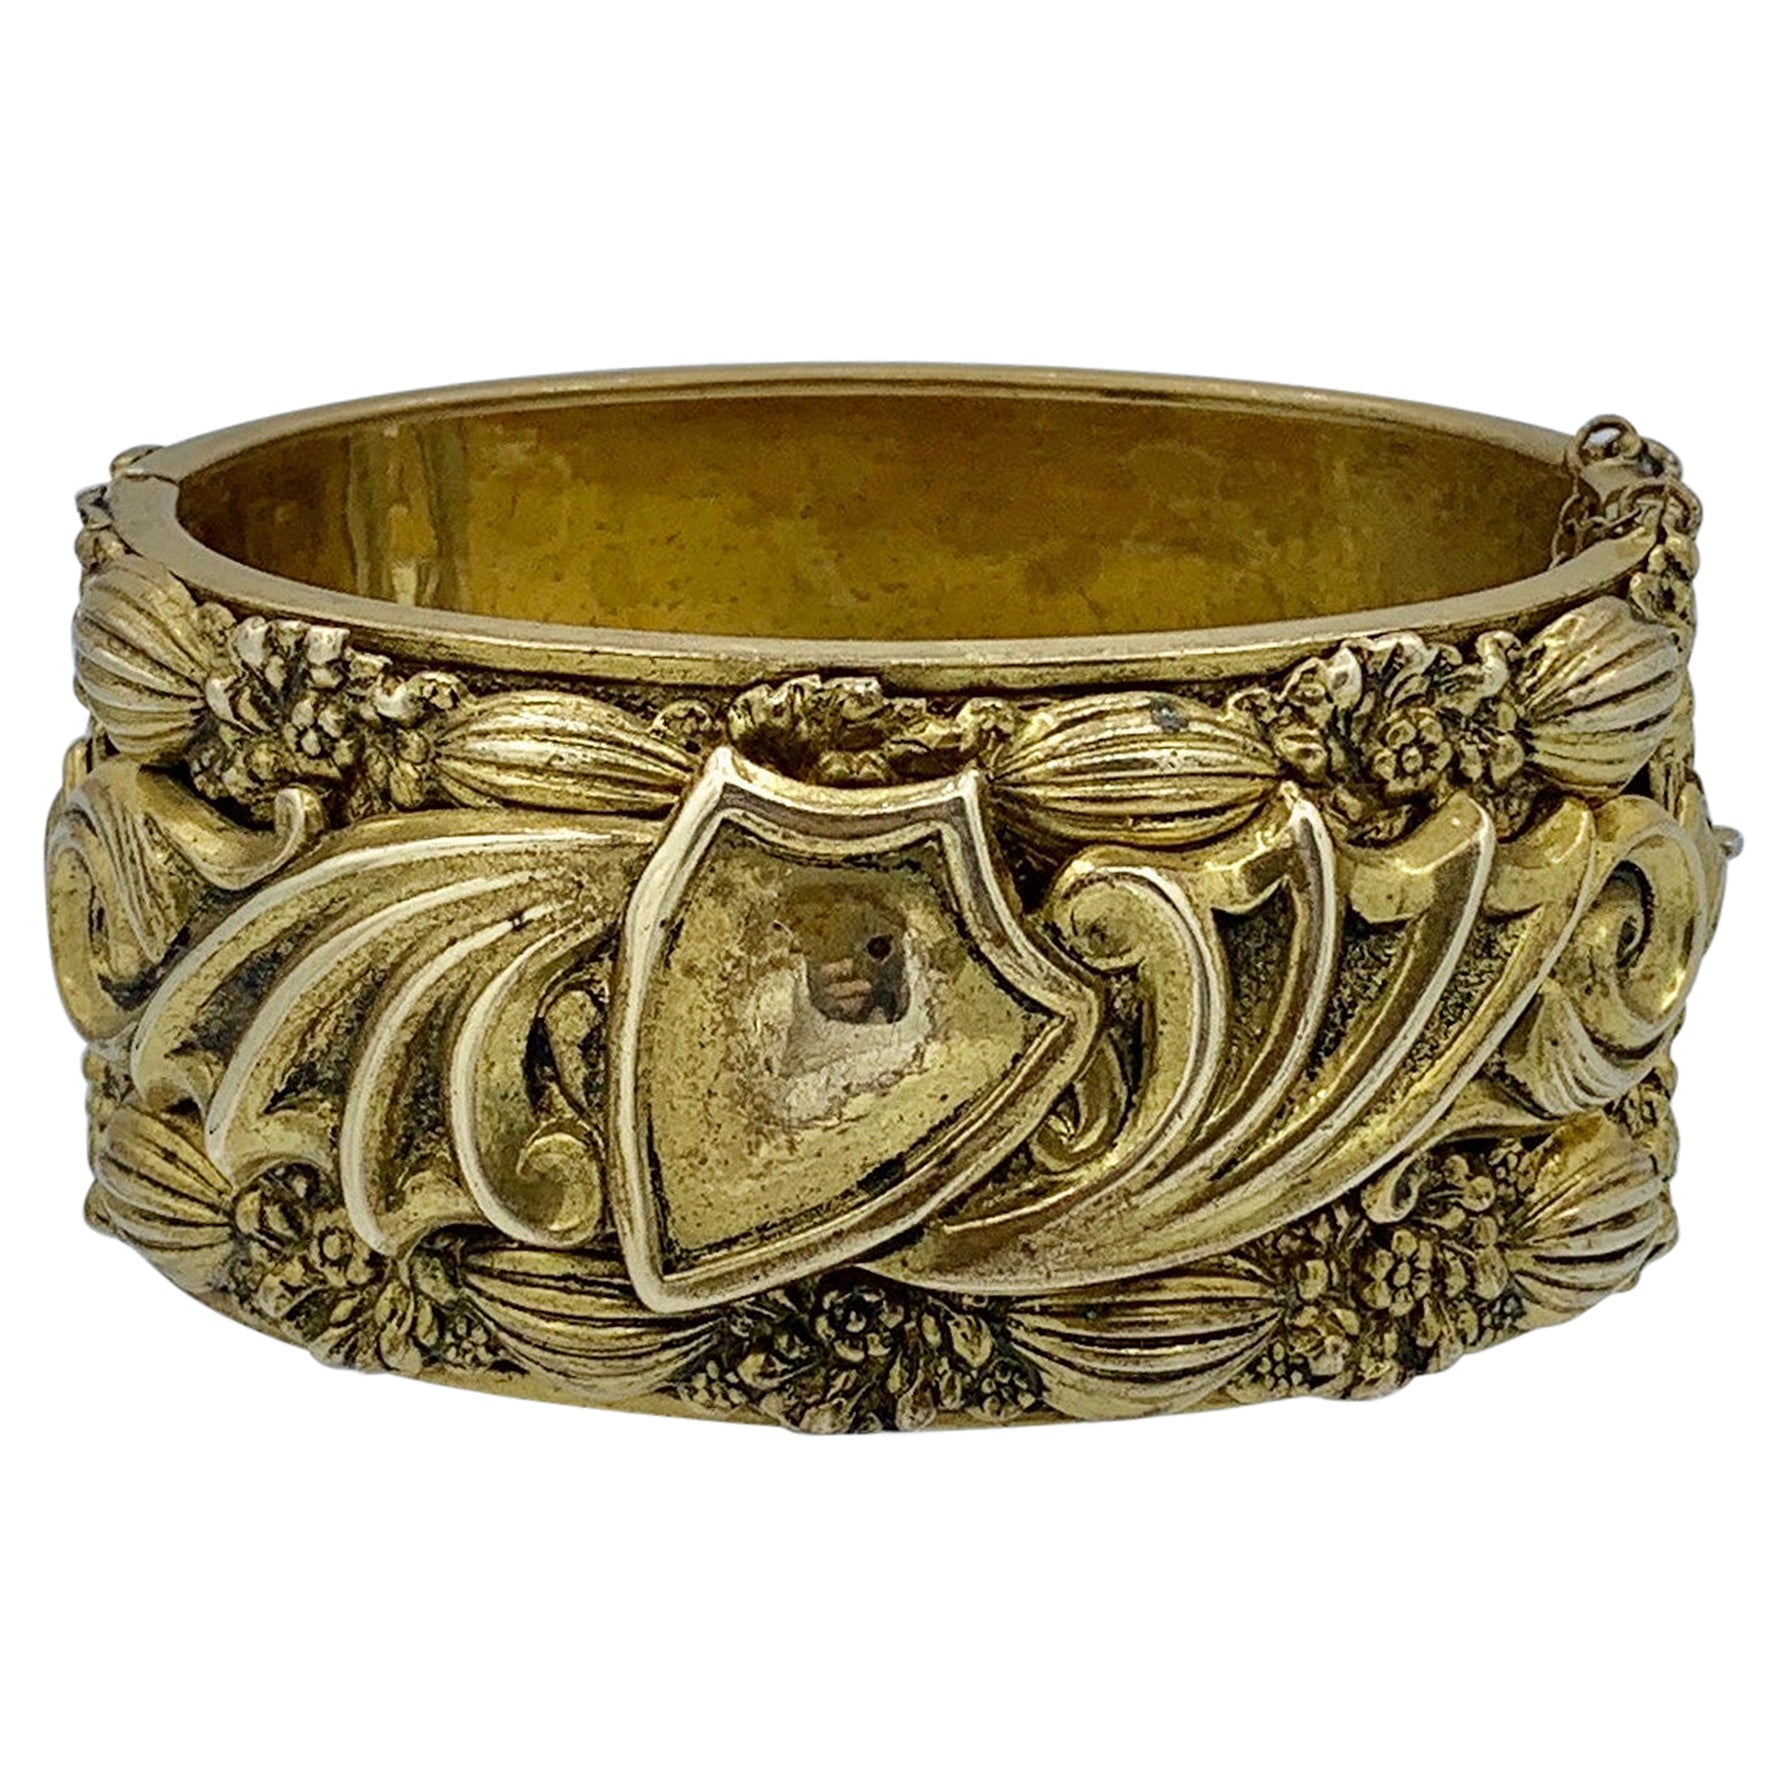 Viktorianischer Armreif, Armband mit Blumenmotiv, schwer, dreidimensional, Gold gefüllt, selten